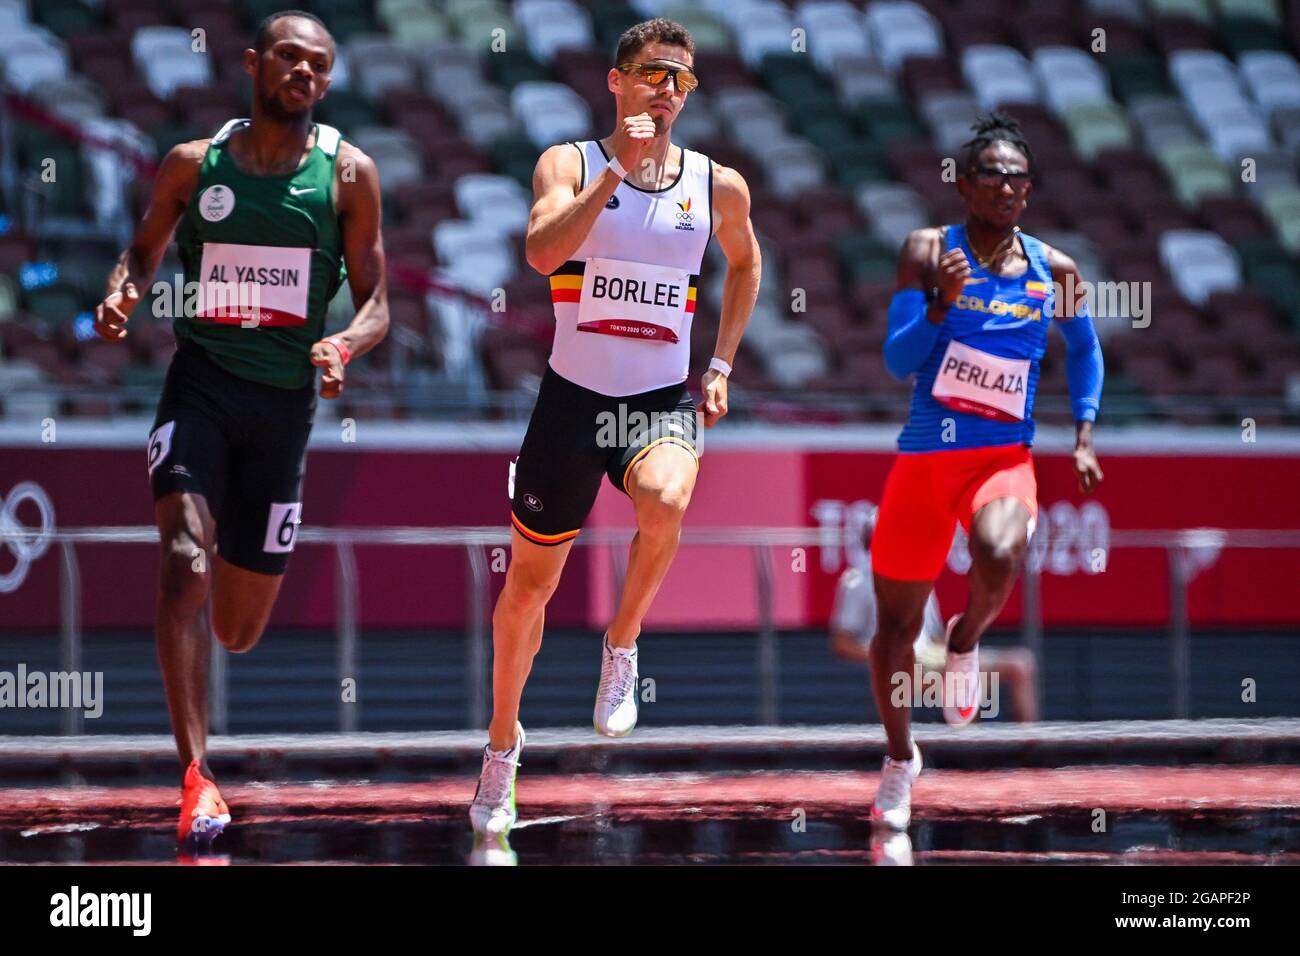 Arabie Saoudite Mazen Moulan Al Yassin, Belge Kevin Borlee et colombien Alejandro Perlaza photographiés en action pendant les épreuves de la course a de 400m pour hommes Banque D'Images